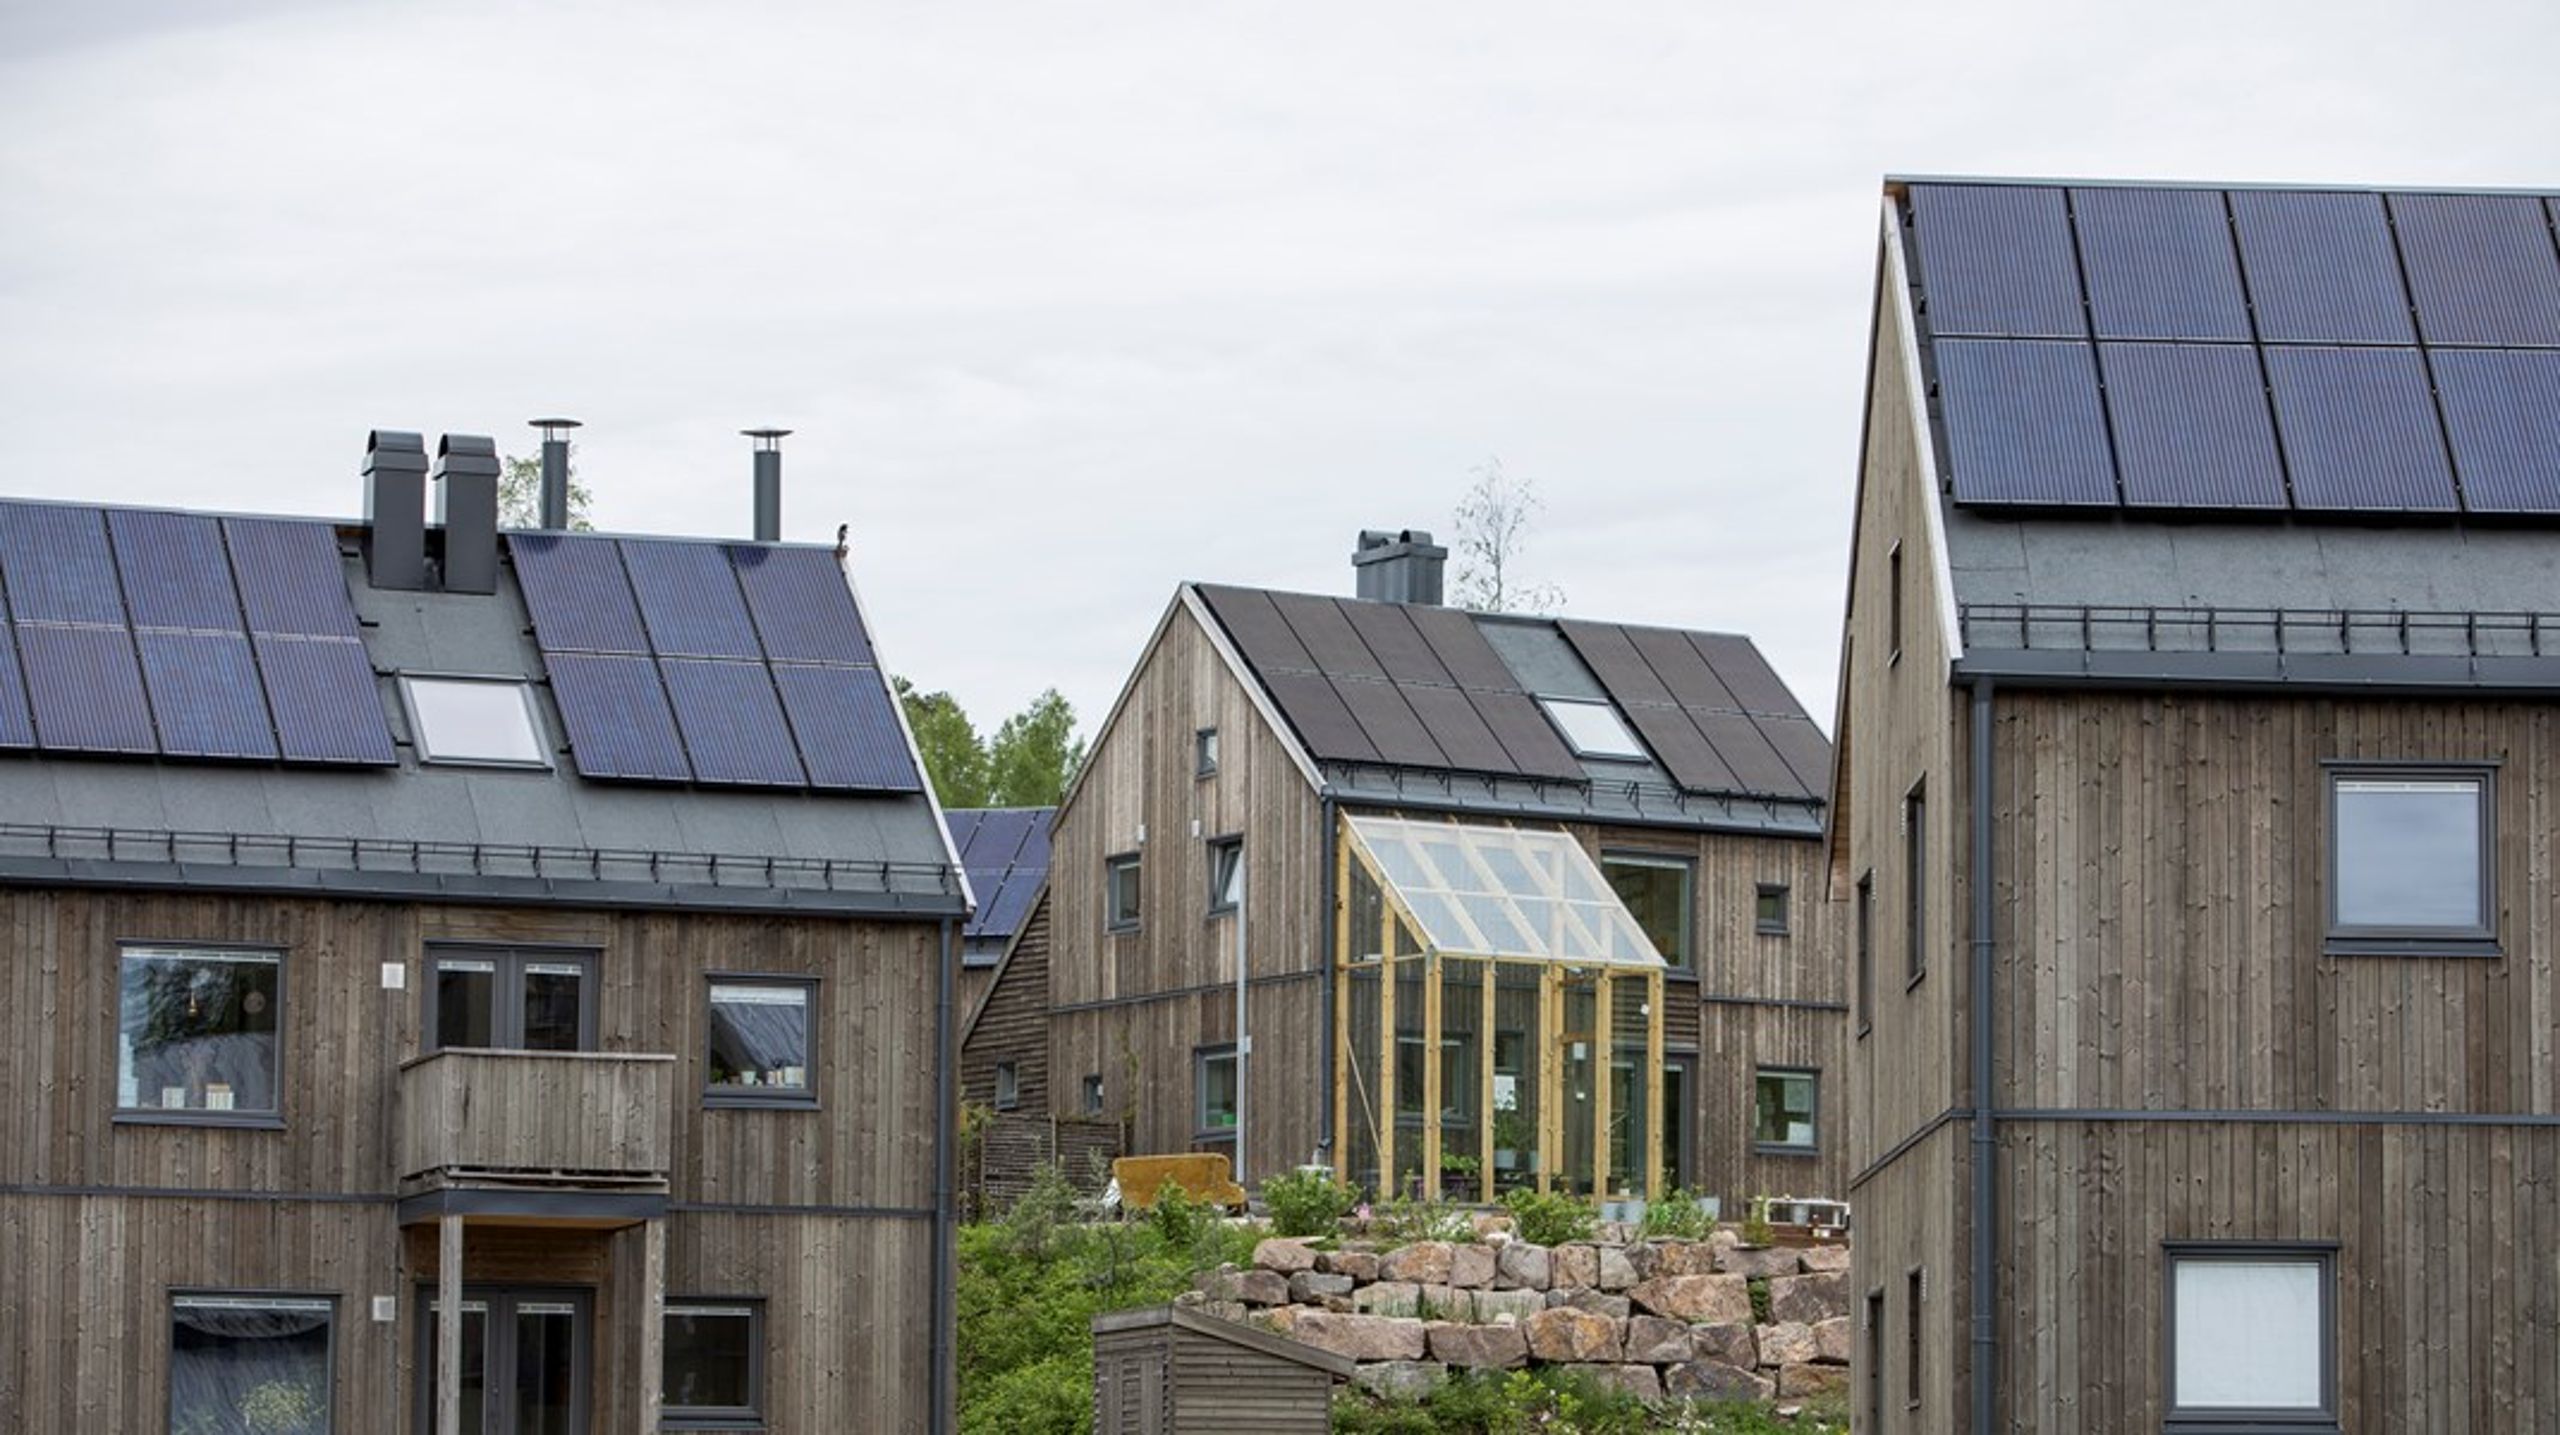 Målet må være rask og ubyråkratisk utbredelse av solkraft på bygg, og at solkraft blir en verdifull, klimavennlig og akseptert del av norske bygg og bygningsmiljø, skriver innleggsforfatterne.